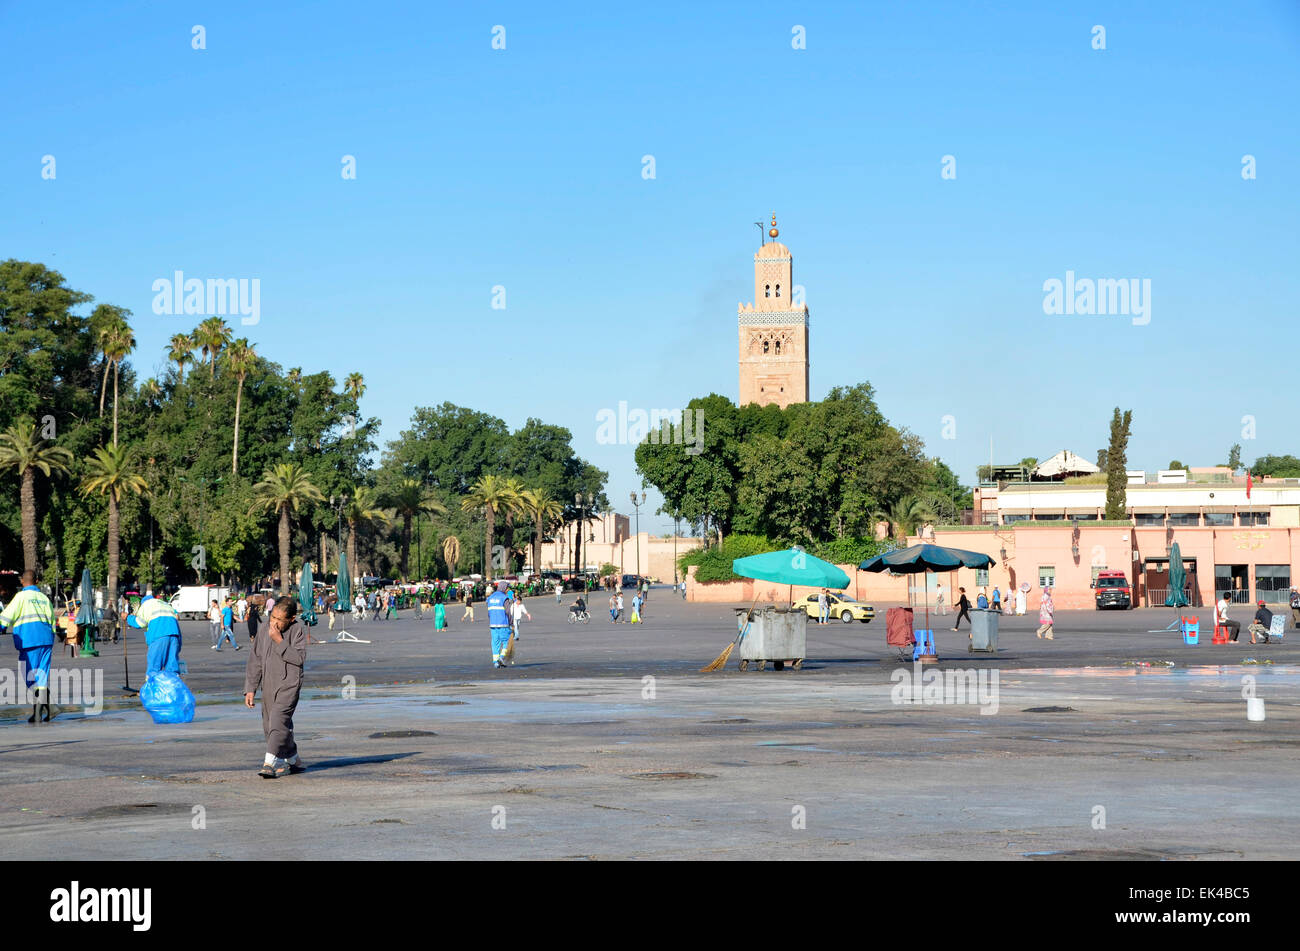 La torre della Moschea di Koutoubia nella medina ingresso alla piazza Jemaa El Fna souk di Marrakech, Marocco Foto Stock